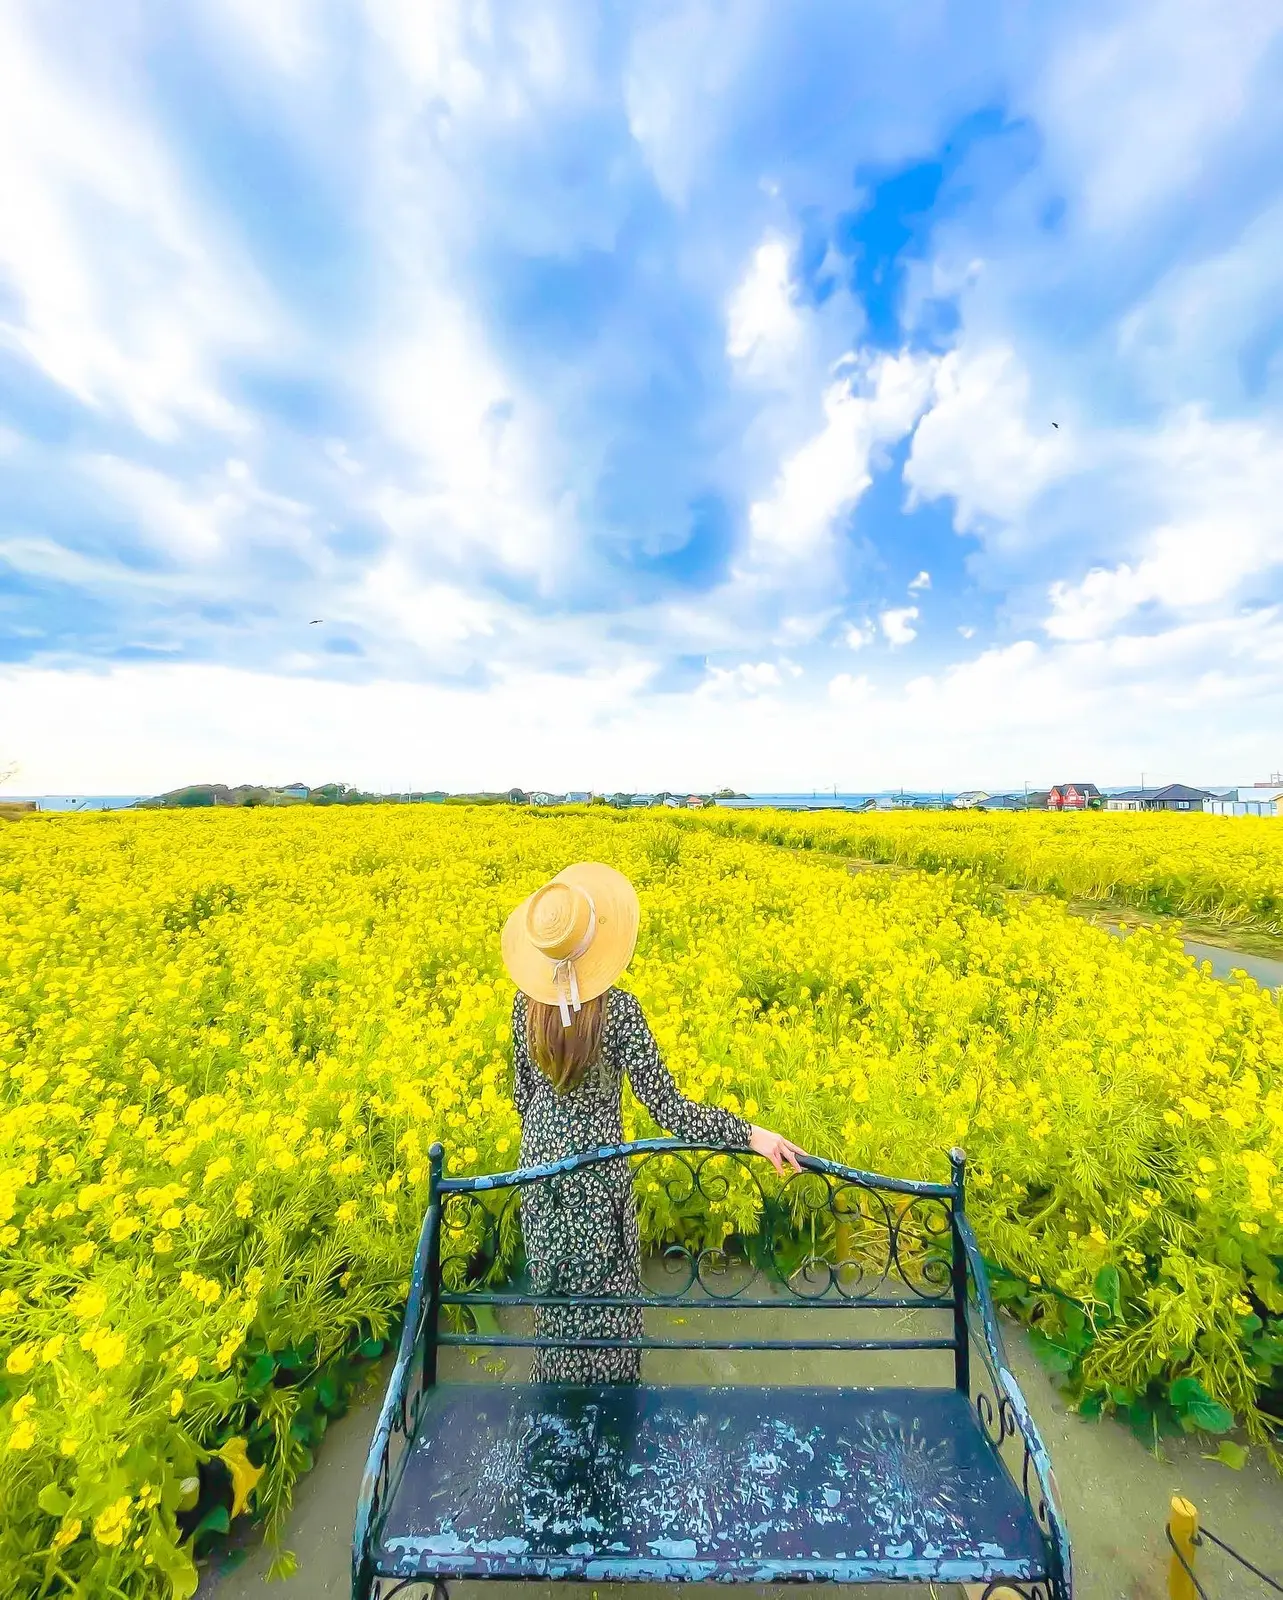 神奈川 見る度にパワーをくれる菜の花畑 ソレイユの丘 菜の花まつり Yukimimiが投稿したフォトブック Lemon8